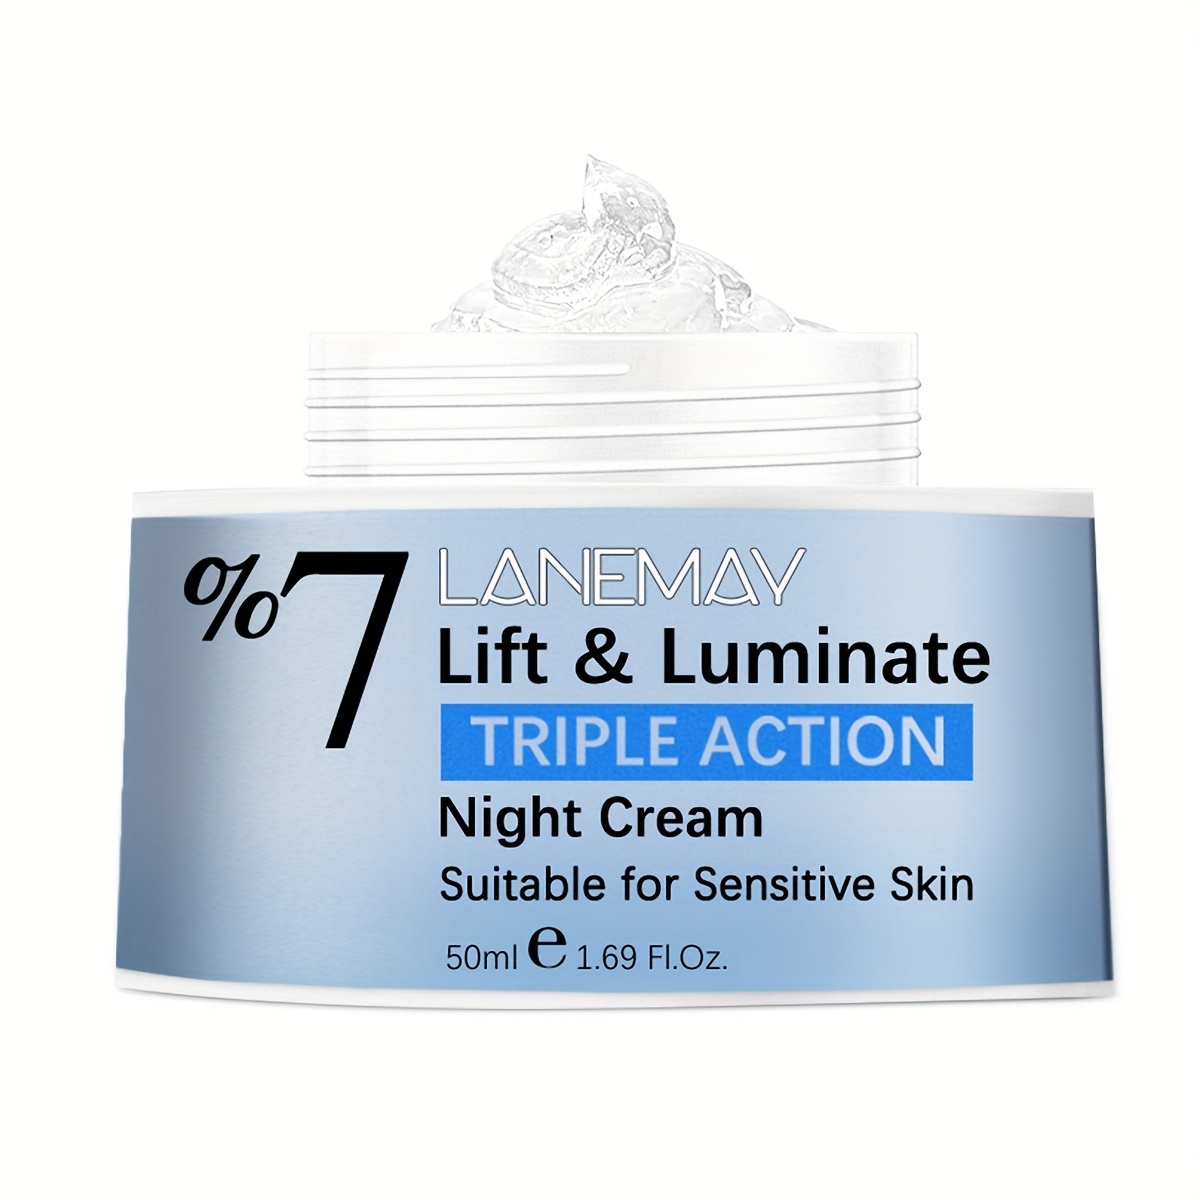 Lift & Luminate Day and Night Cream